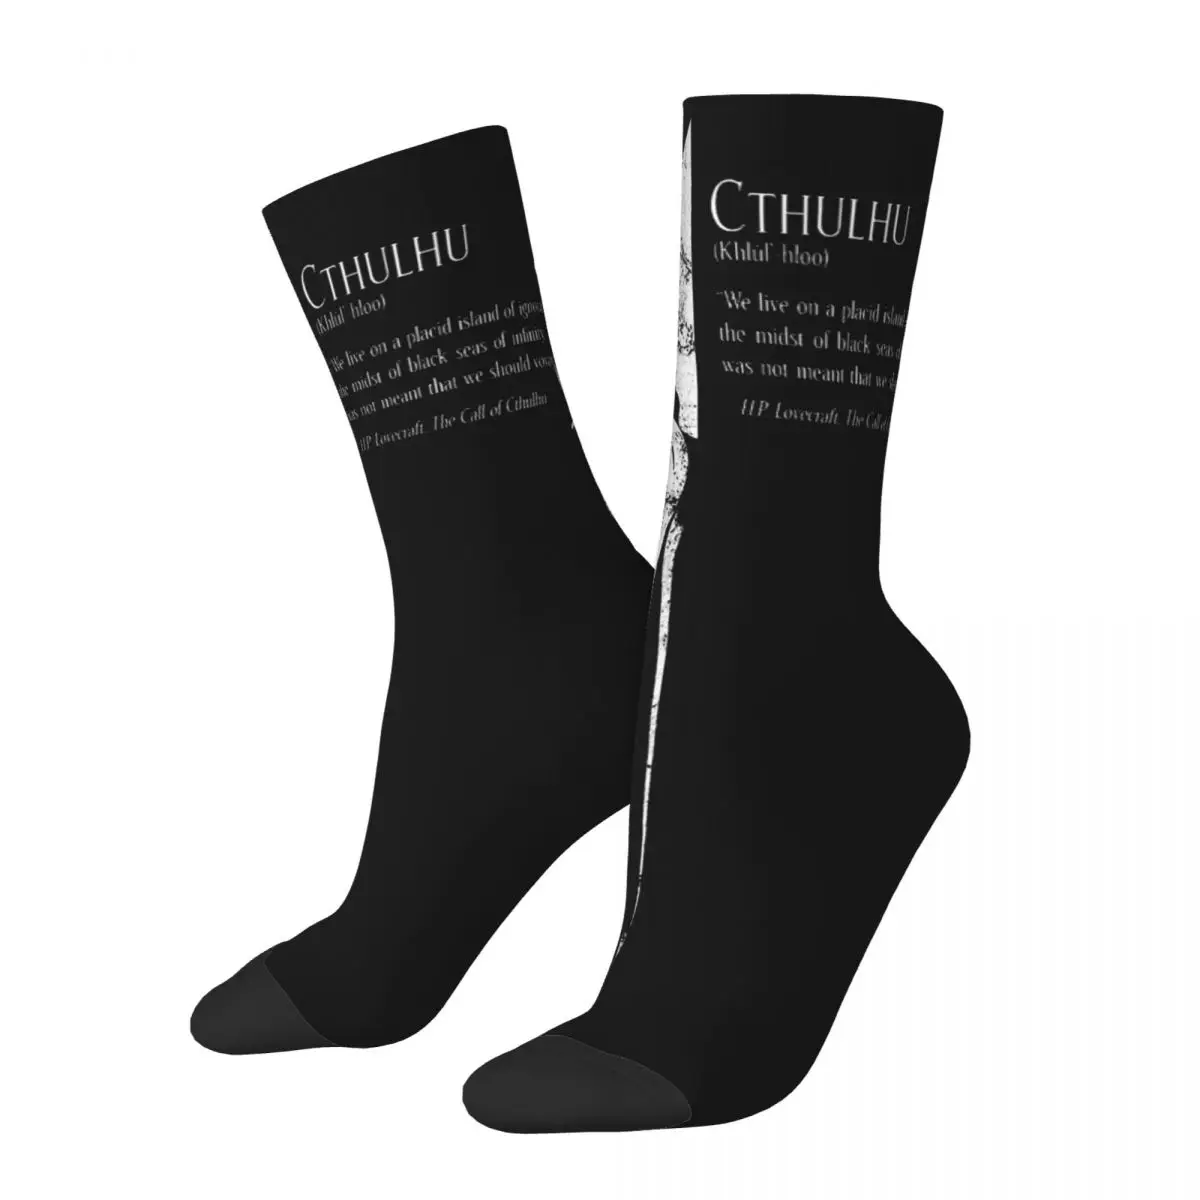 

Забавные сумасшедшие компрессионные мраморные Классические носки для мужчин в стиле хип-хоп Harajuku Cthulhu Mythos Веселые качественные носки с принтом для мальчиков